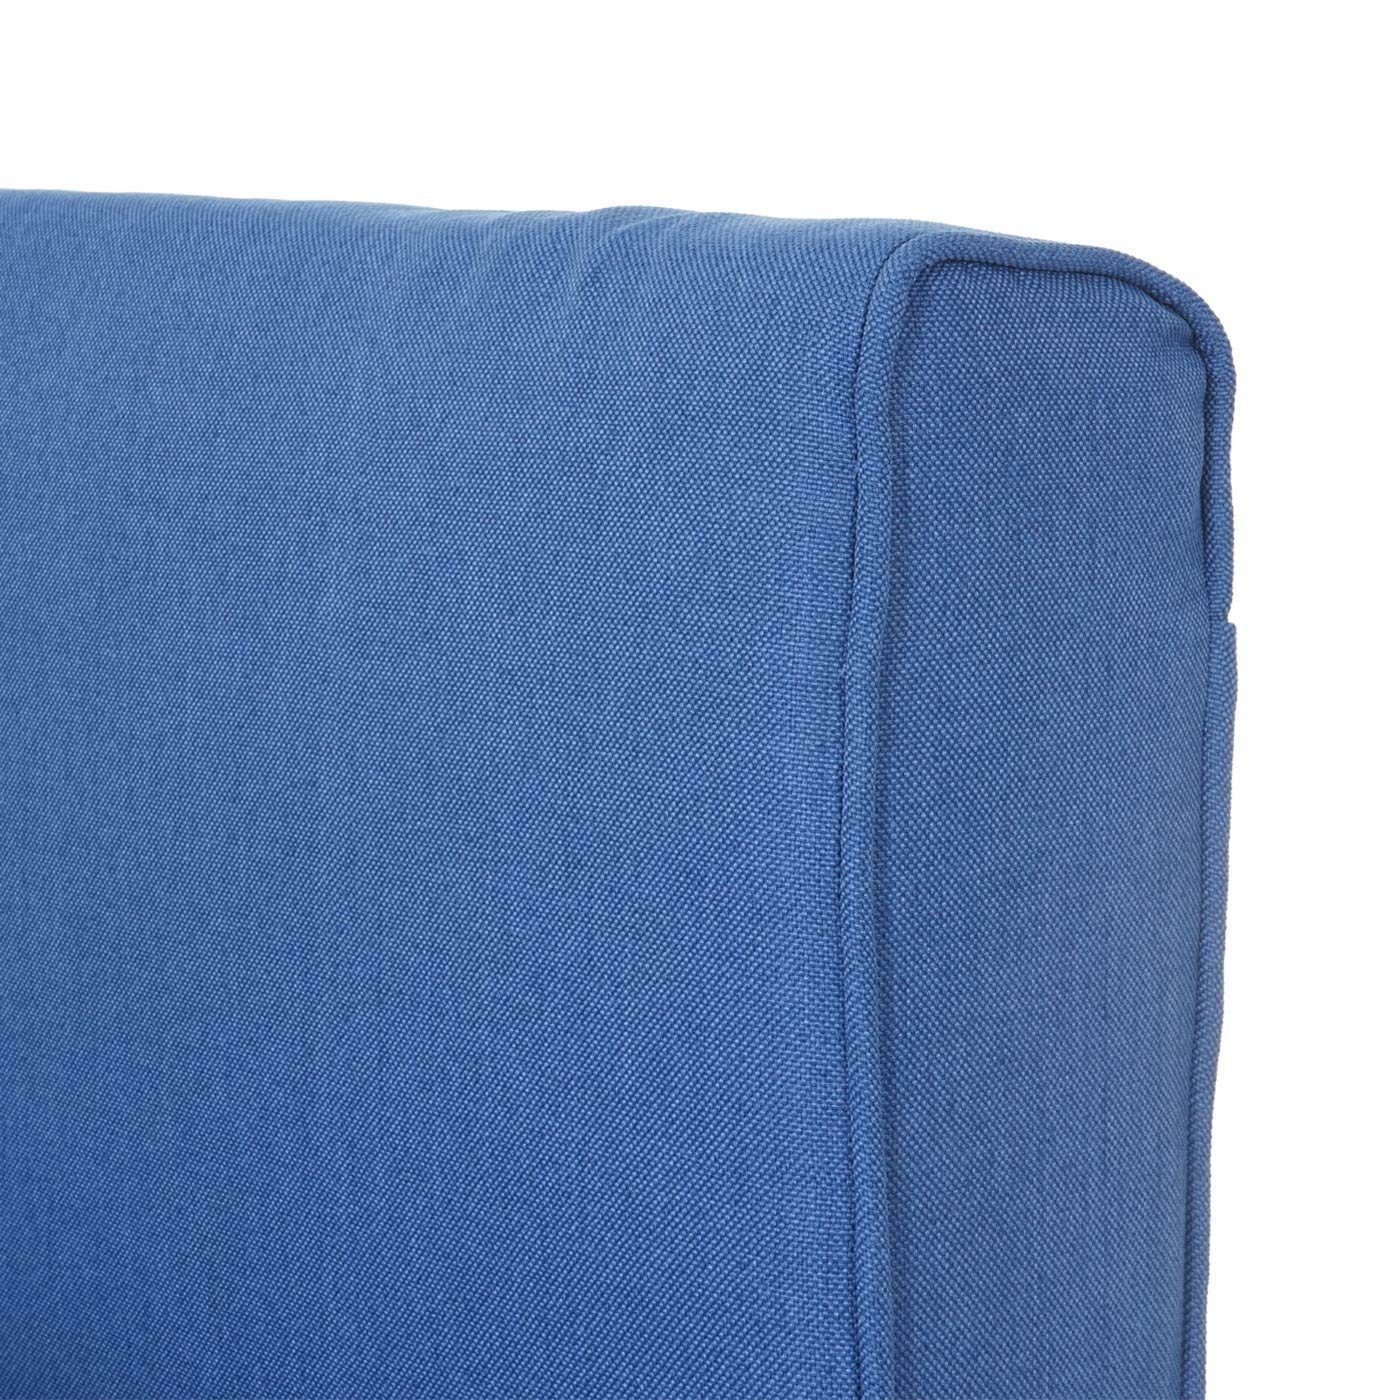 MCW blau MCW-D35, einklappbar, Rückenlehne Standfüße Schlaffunktion arretierbar, Sessel